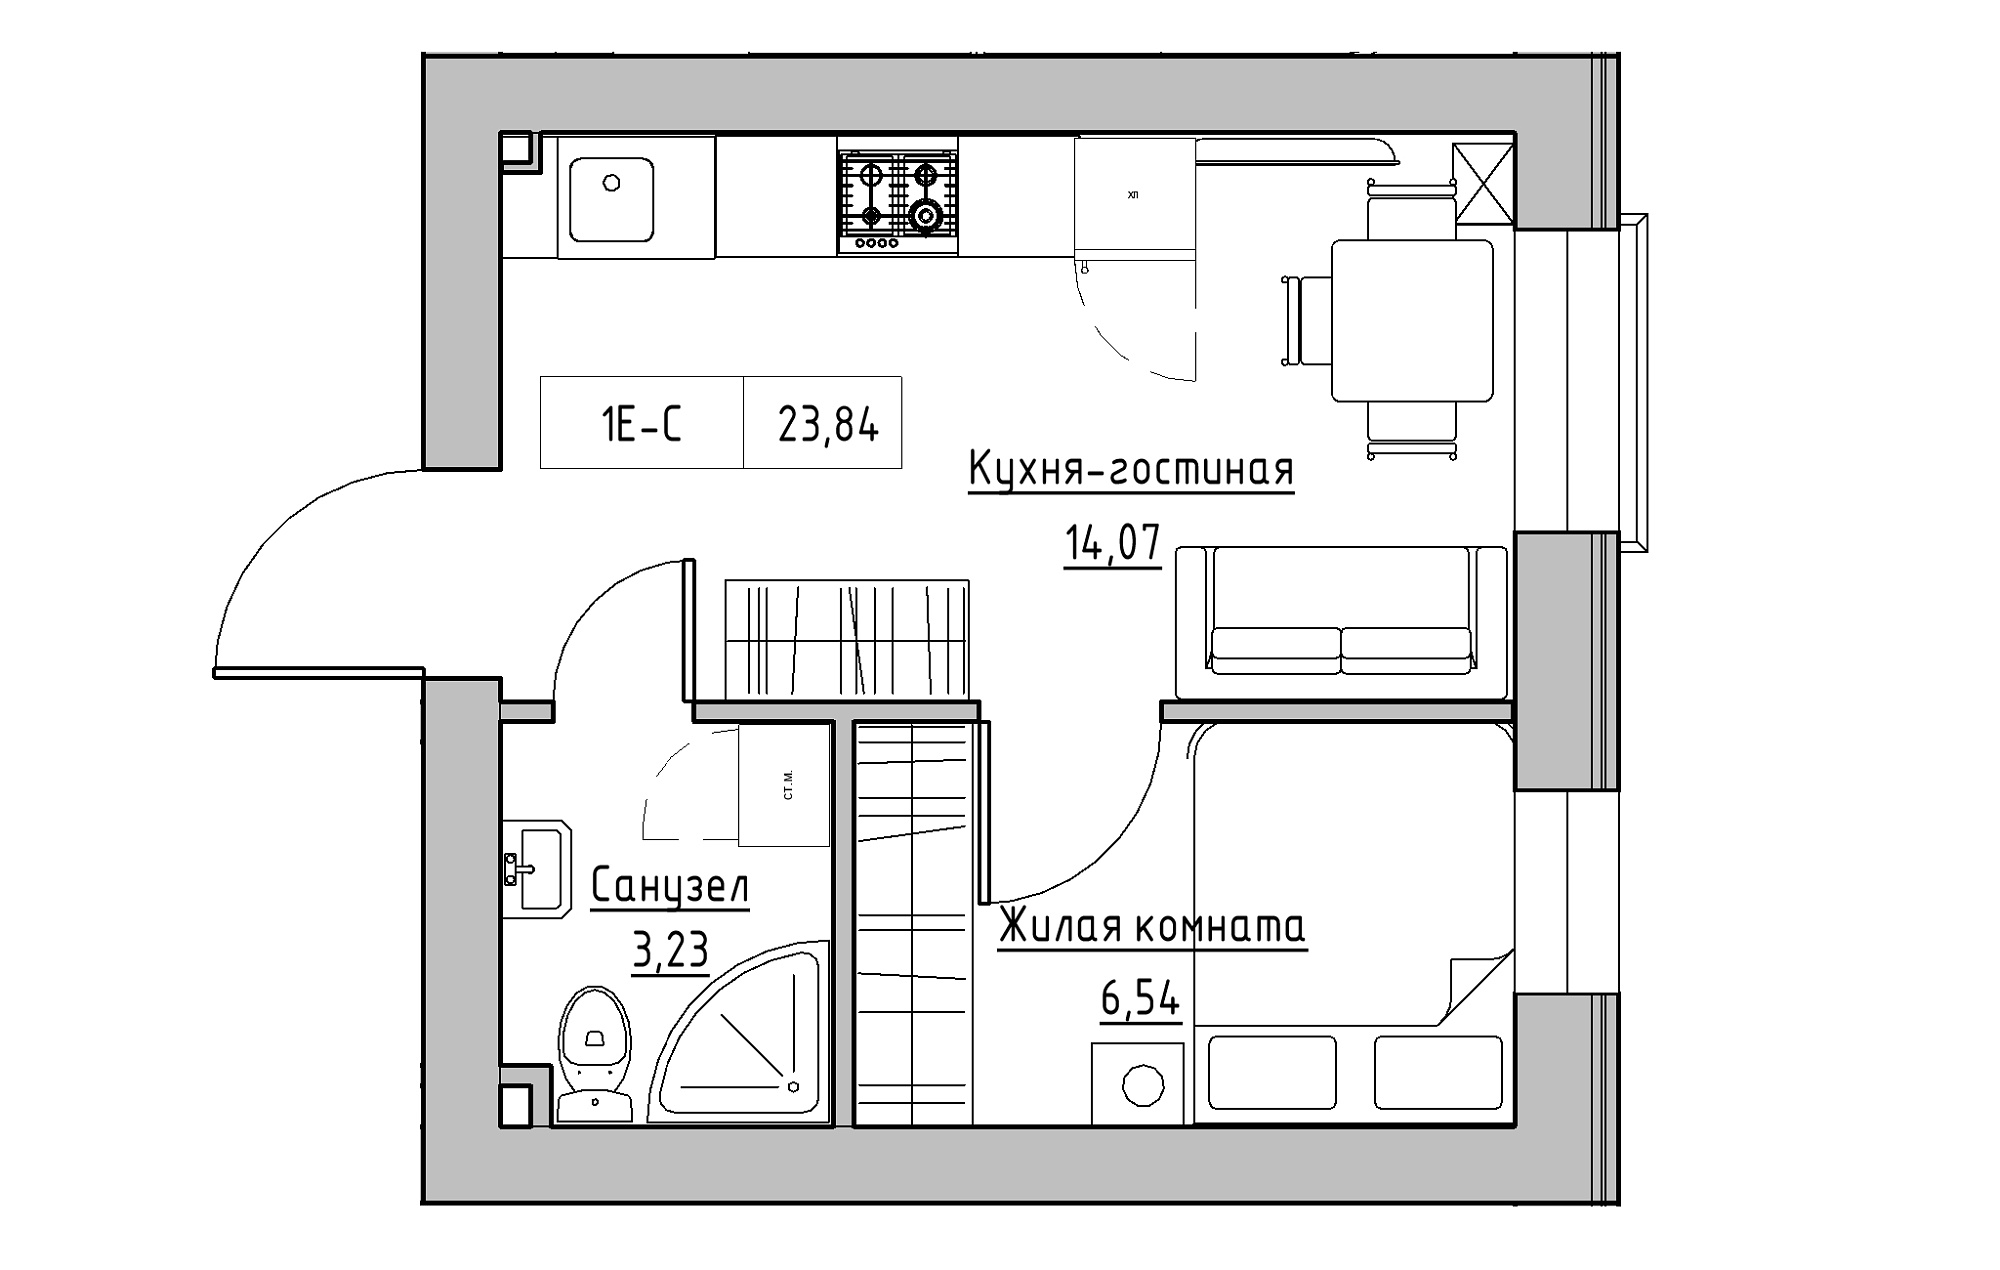 Планировка 1-к квартира площей 23.84м2, KS-018-05/0014.